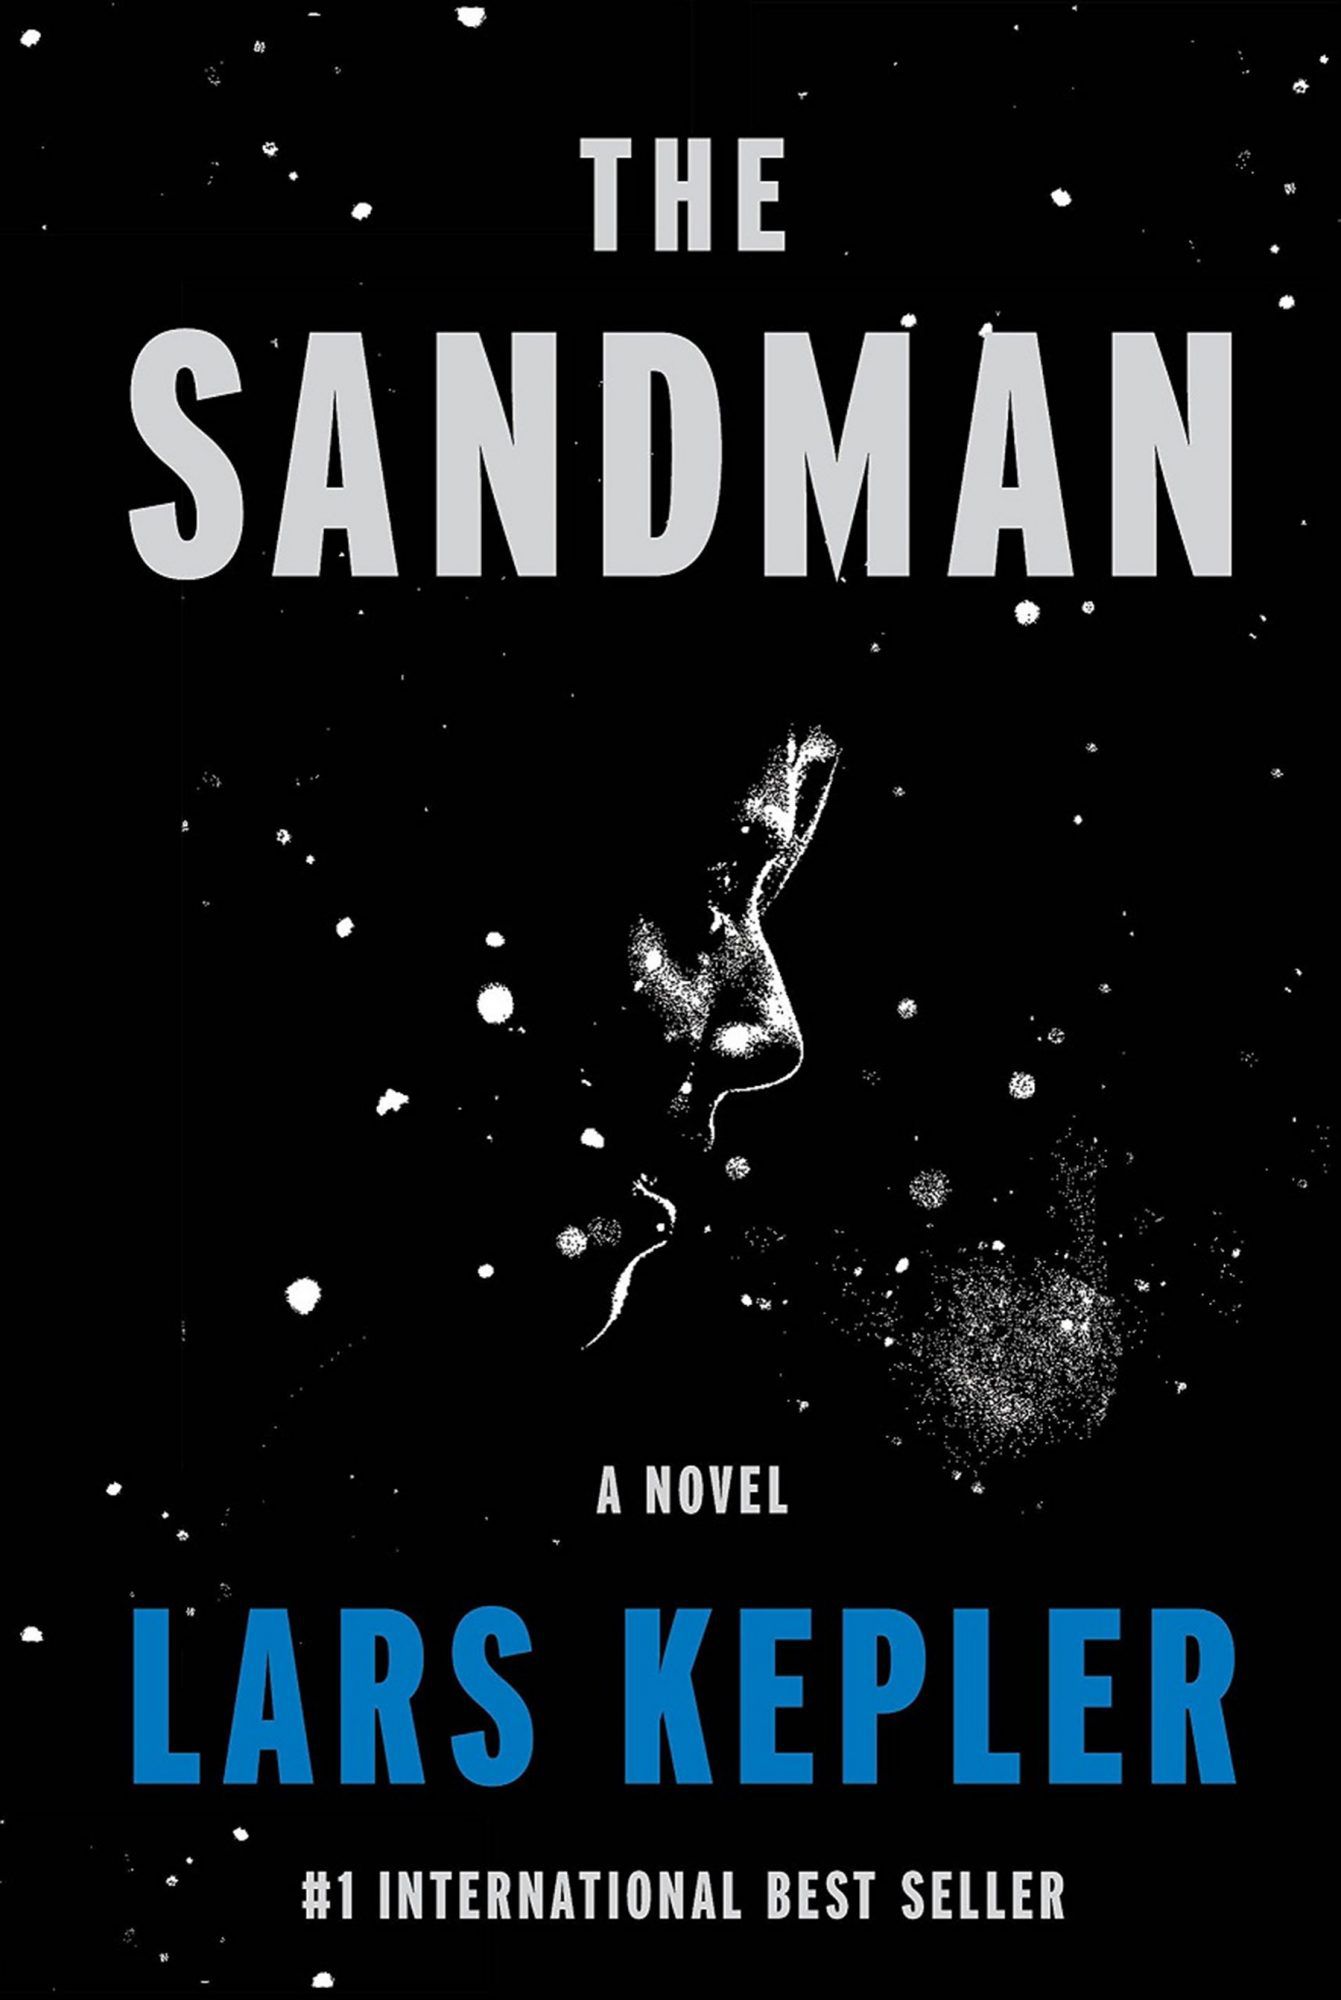 The Sandman&nbsp;by Lars Kepler